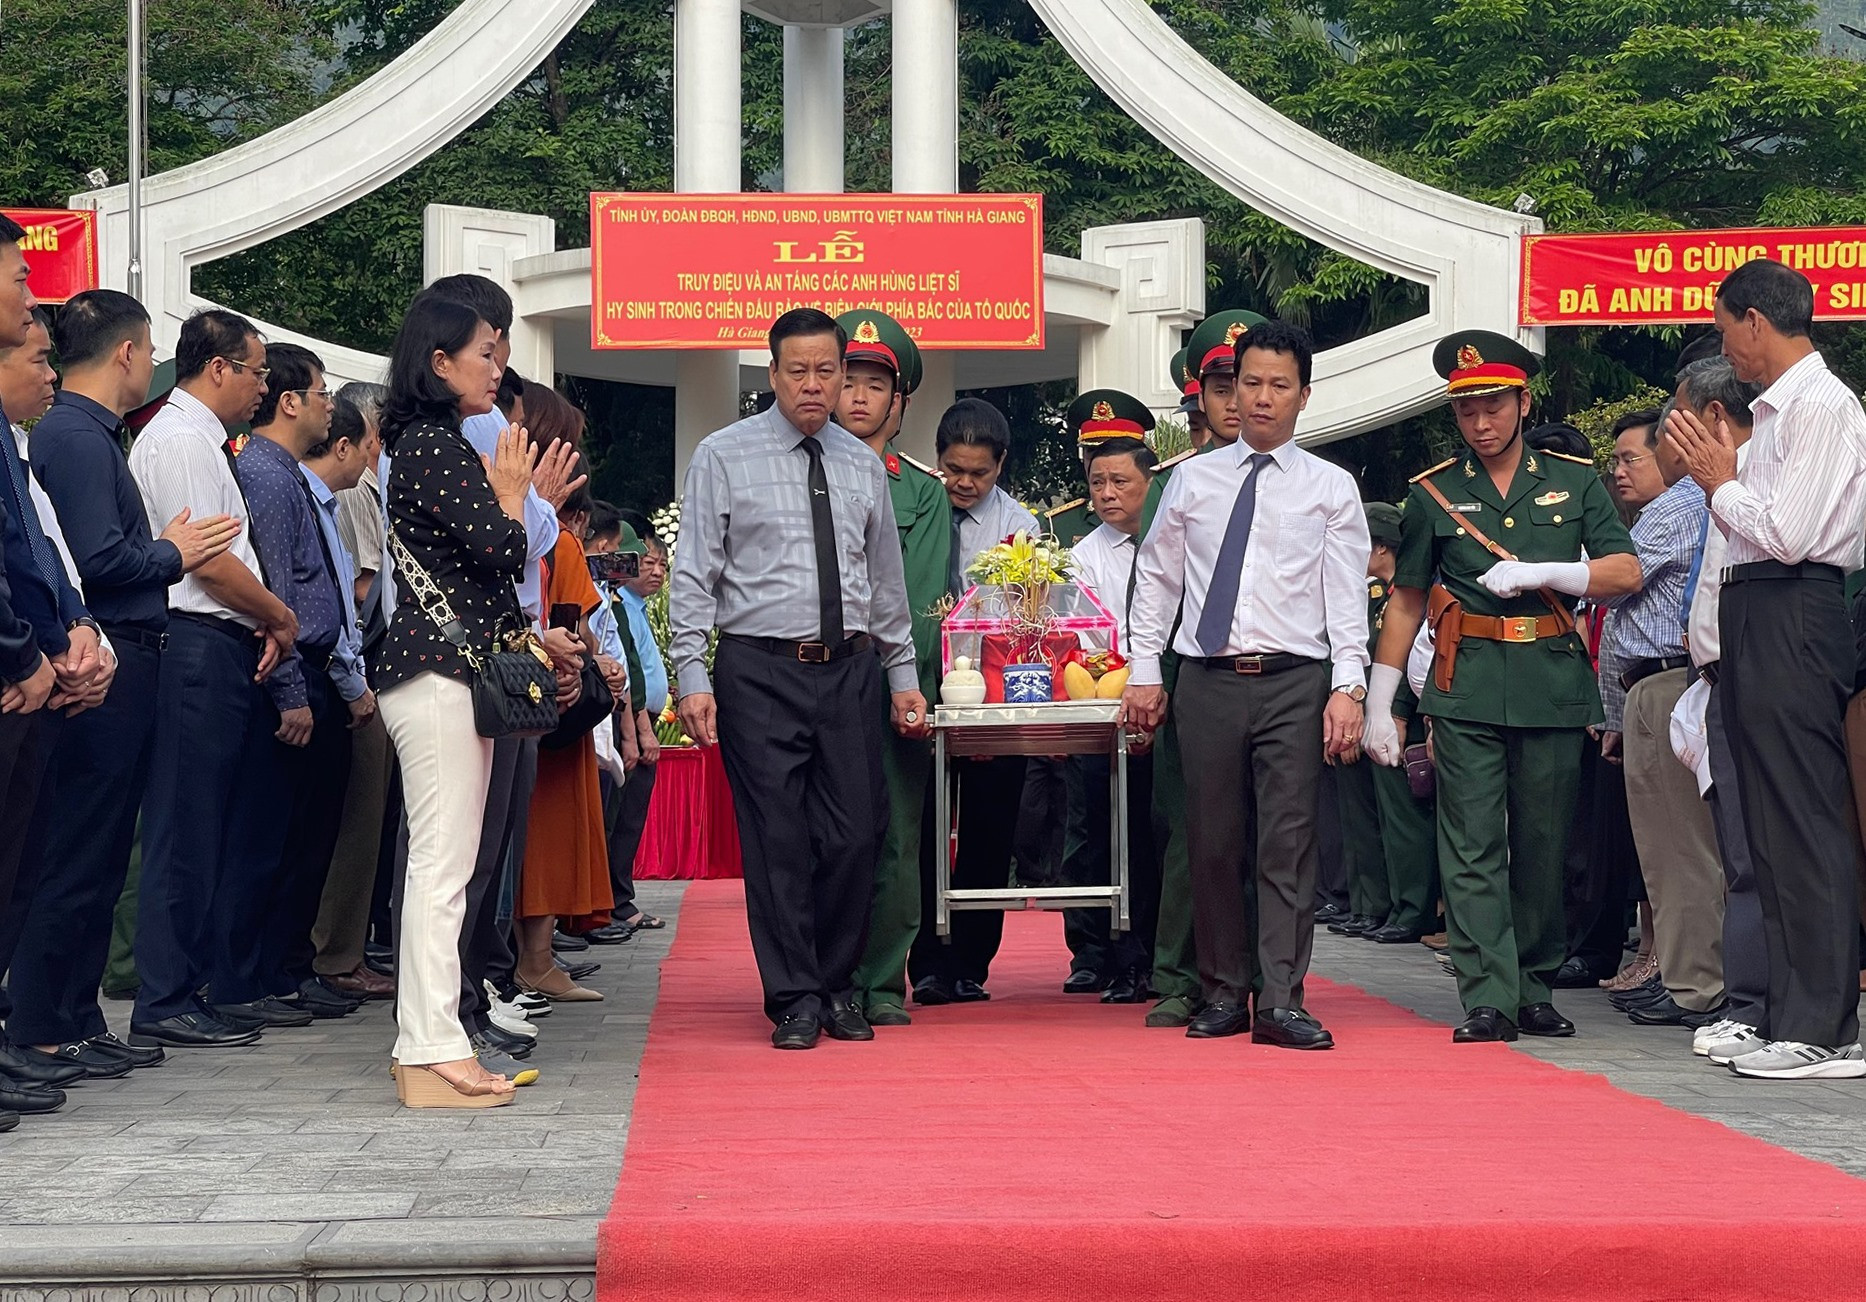 Sau lễ truy điệu, các đoàn đại biểu đã thực hiện nghi thức tiễn đưa các Anh hùng liệt sĩ về nơi an nghỉ trong khuôn viên Nghĩa trang Liệt sĩ Quốc gia Vị Xuyên.